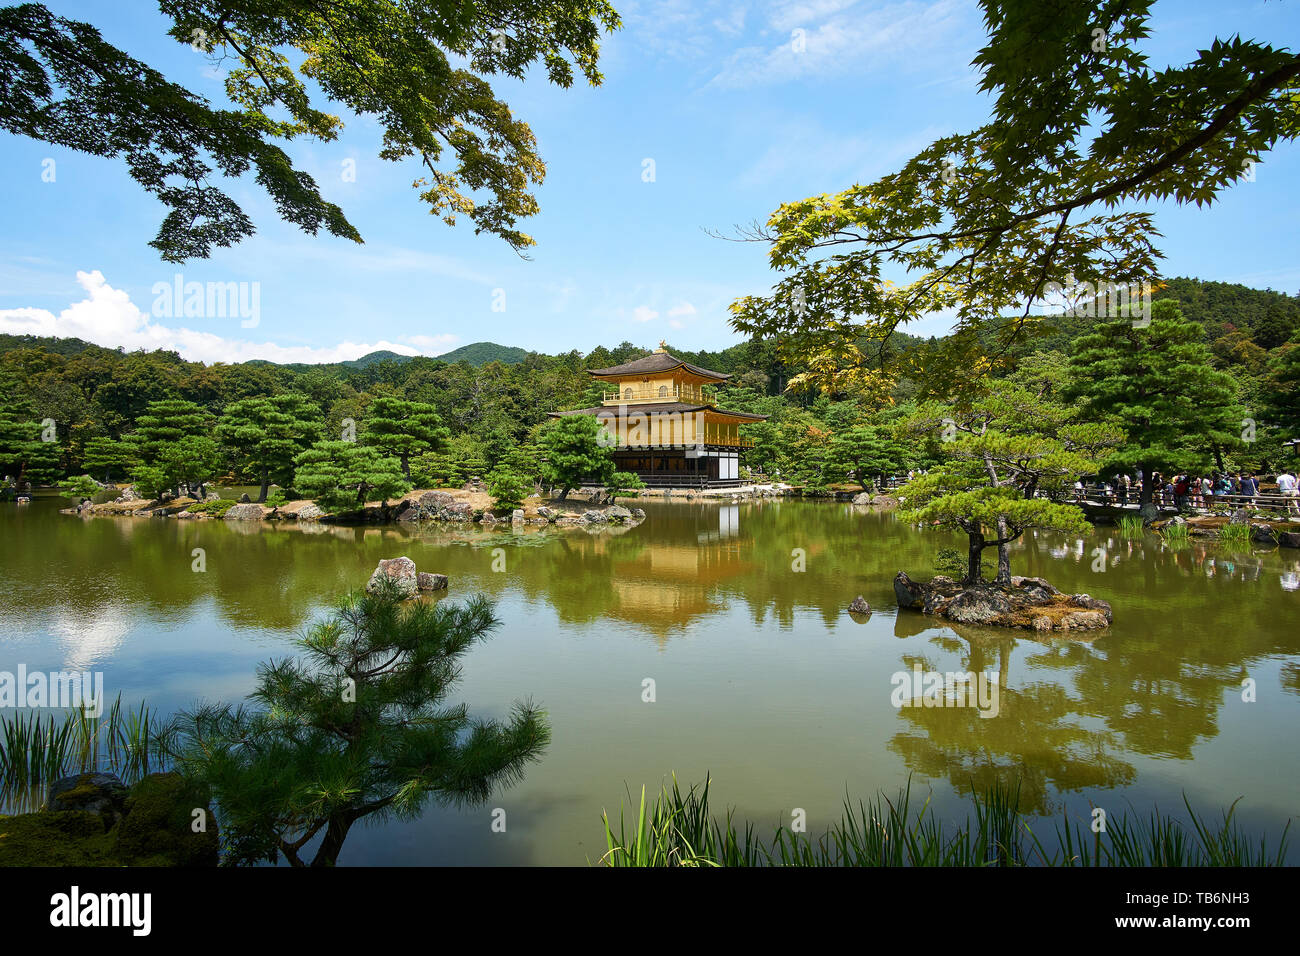 (Kinkakuji padiglione d'Oro) riflette sull'acqua, circondato da alberi e visitatori, su una chiara, soleggiate giornate estive a Kyoto, in Giappone. Foto Stock